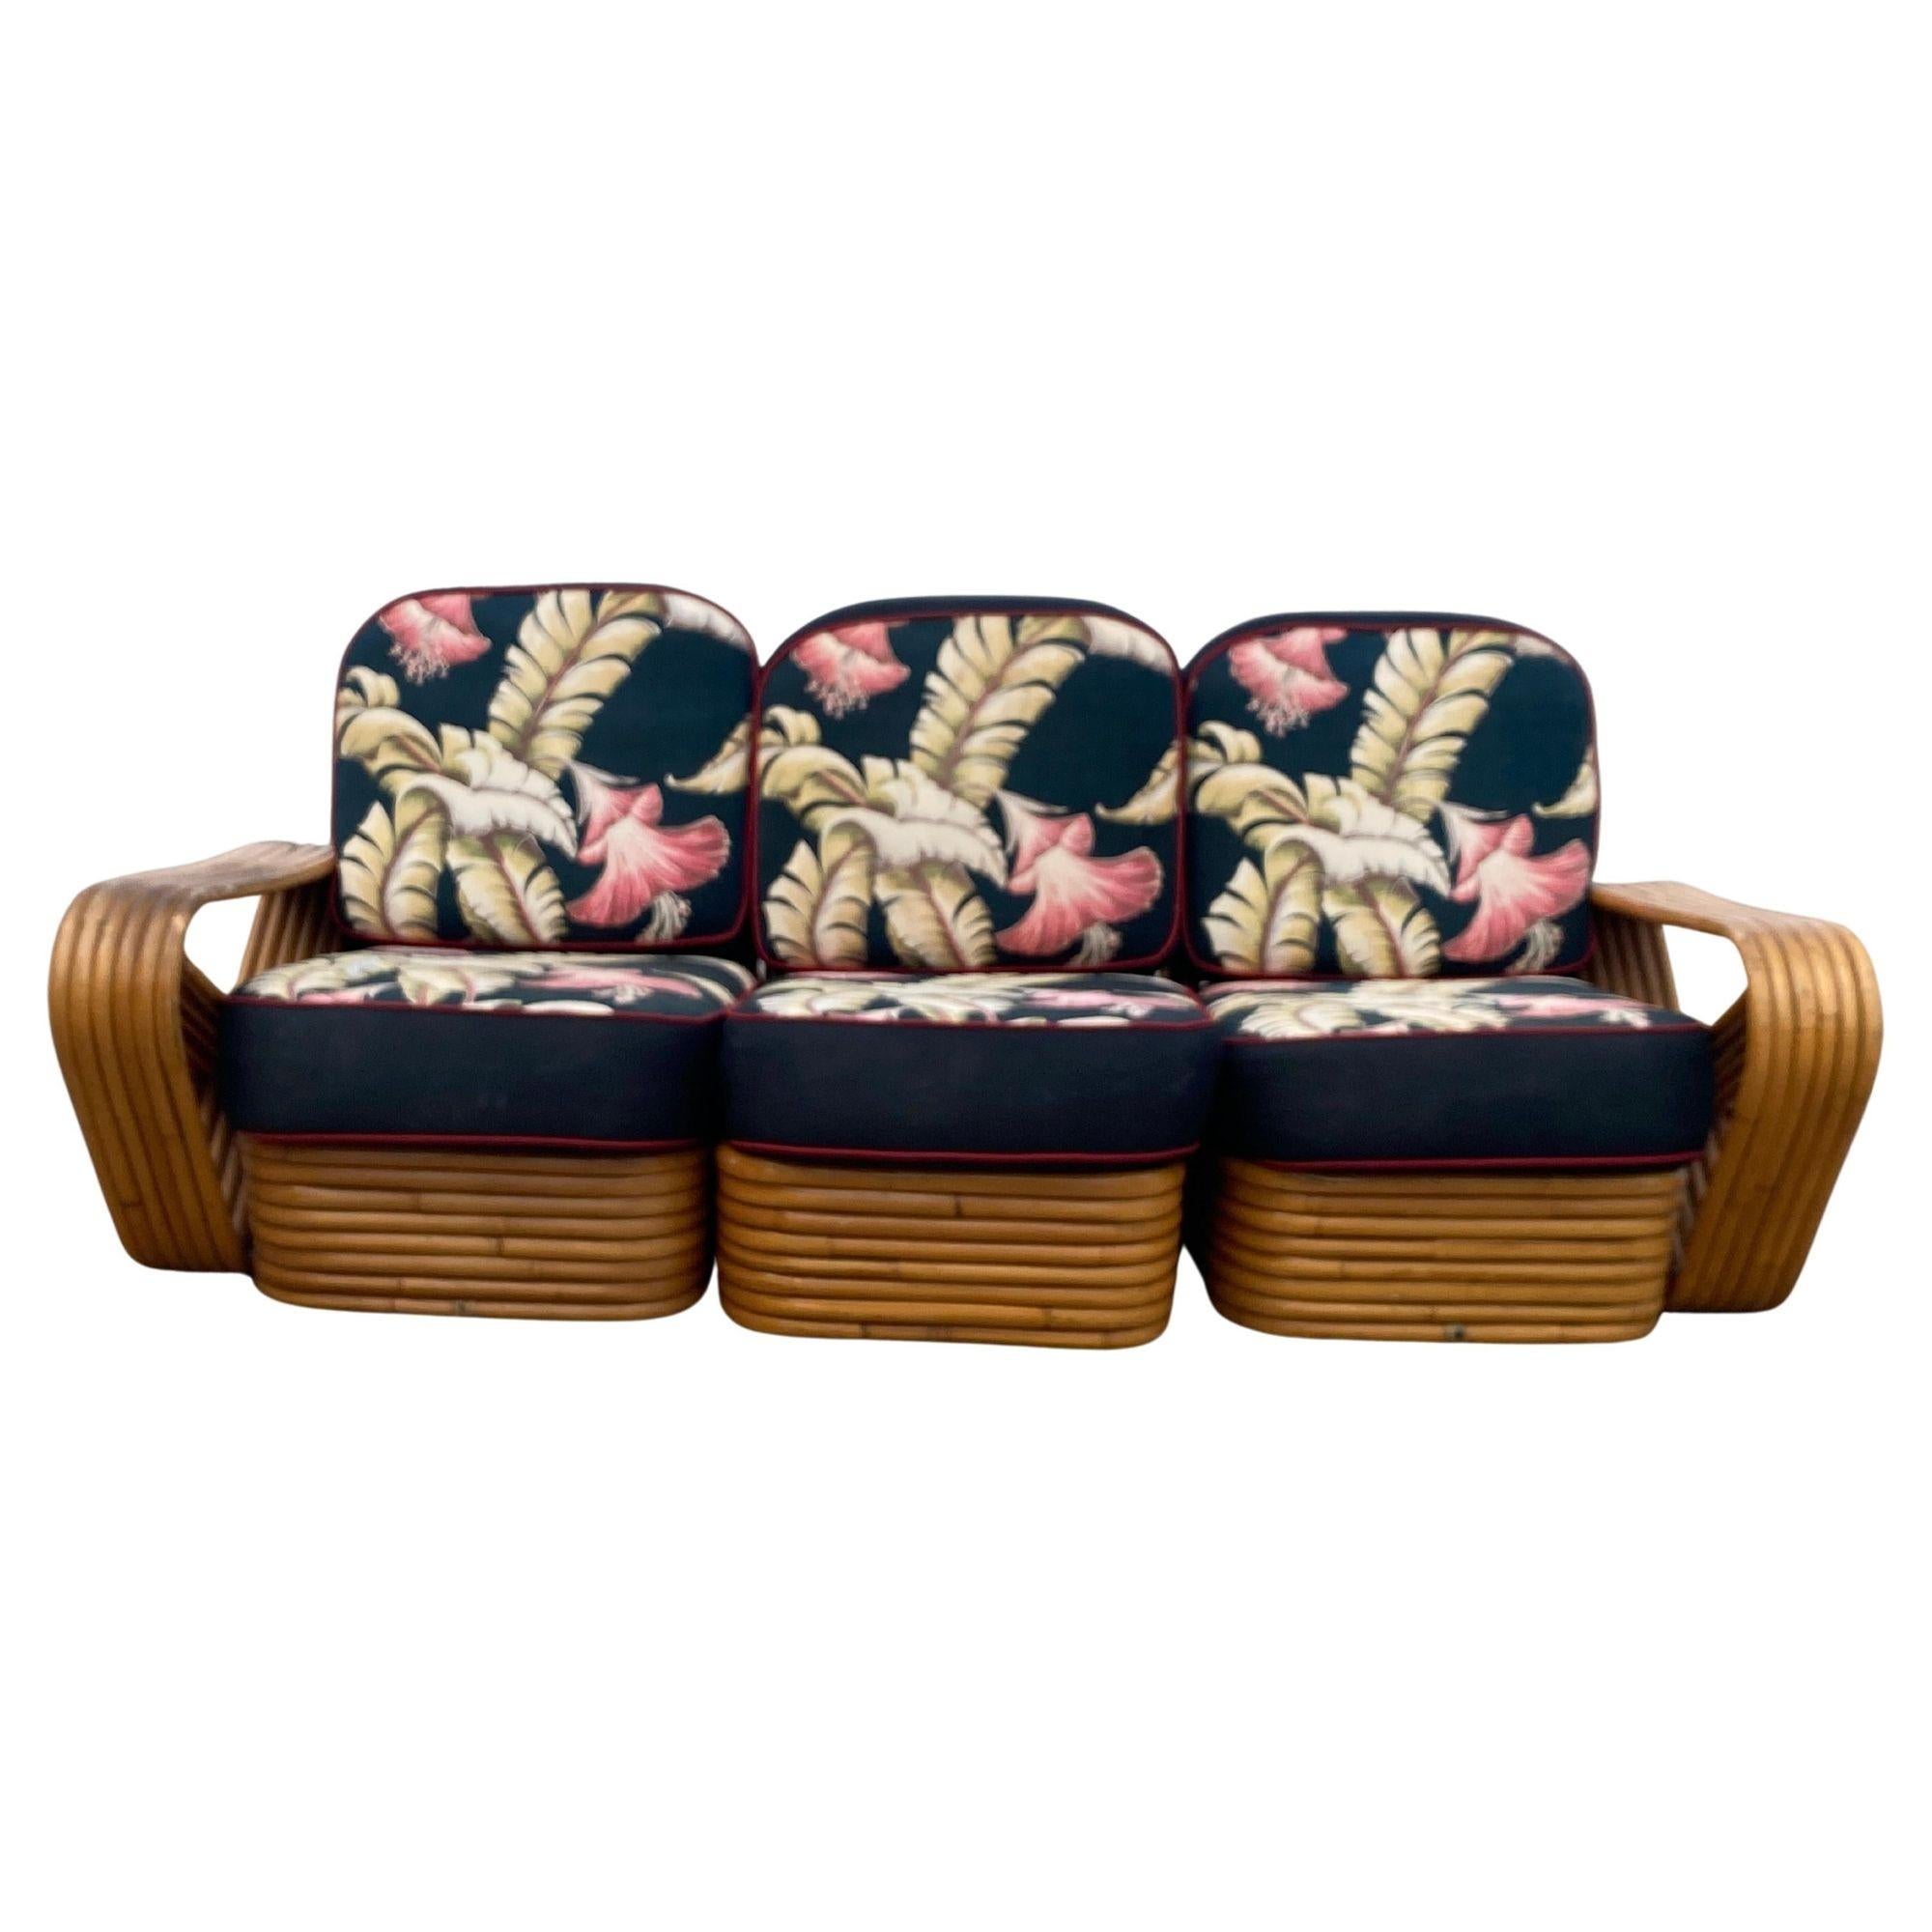 Die Rattan-Wohnzimmergarnitur im Stil von Paul Frankl umfasst ein passendes Dreisitzer-Sofa und ein Paar Loungesessel. Beide verfügen über die berühmten sechssträngigen, quadratischen Brezel-Seitenarme und den gestapelten Rattan-Sockel, der